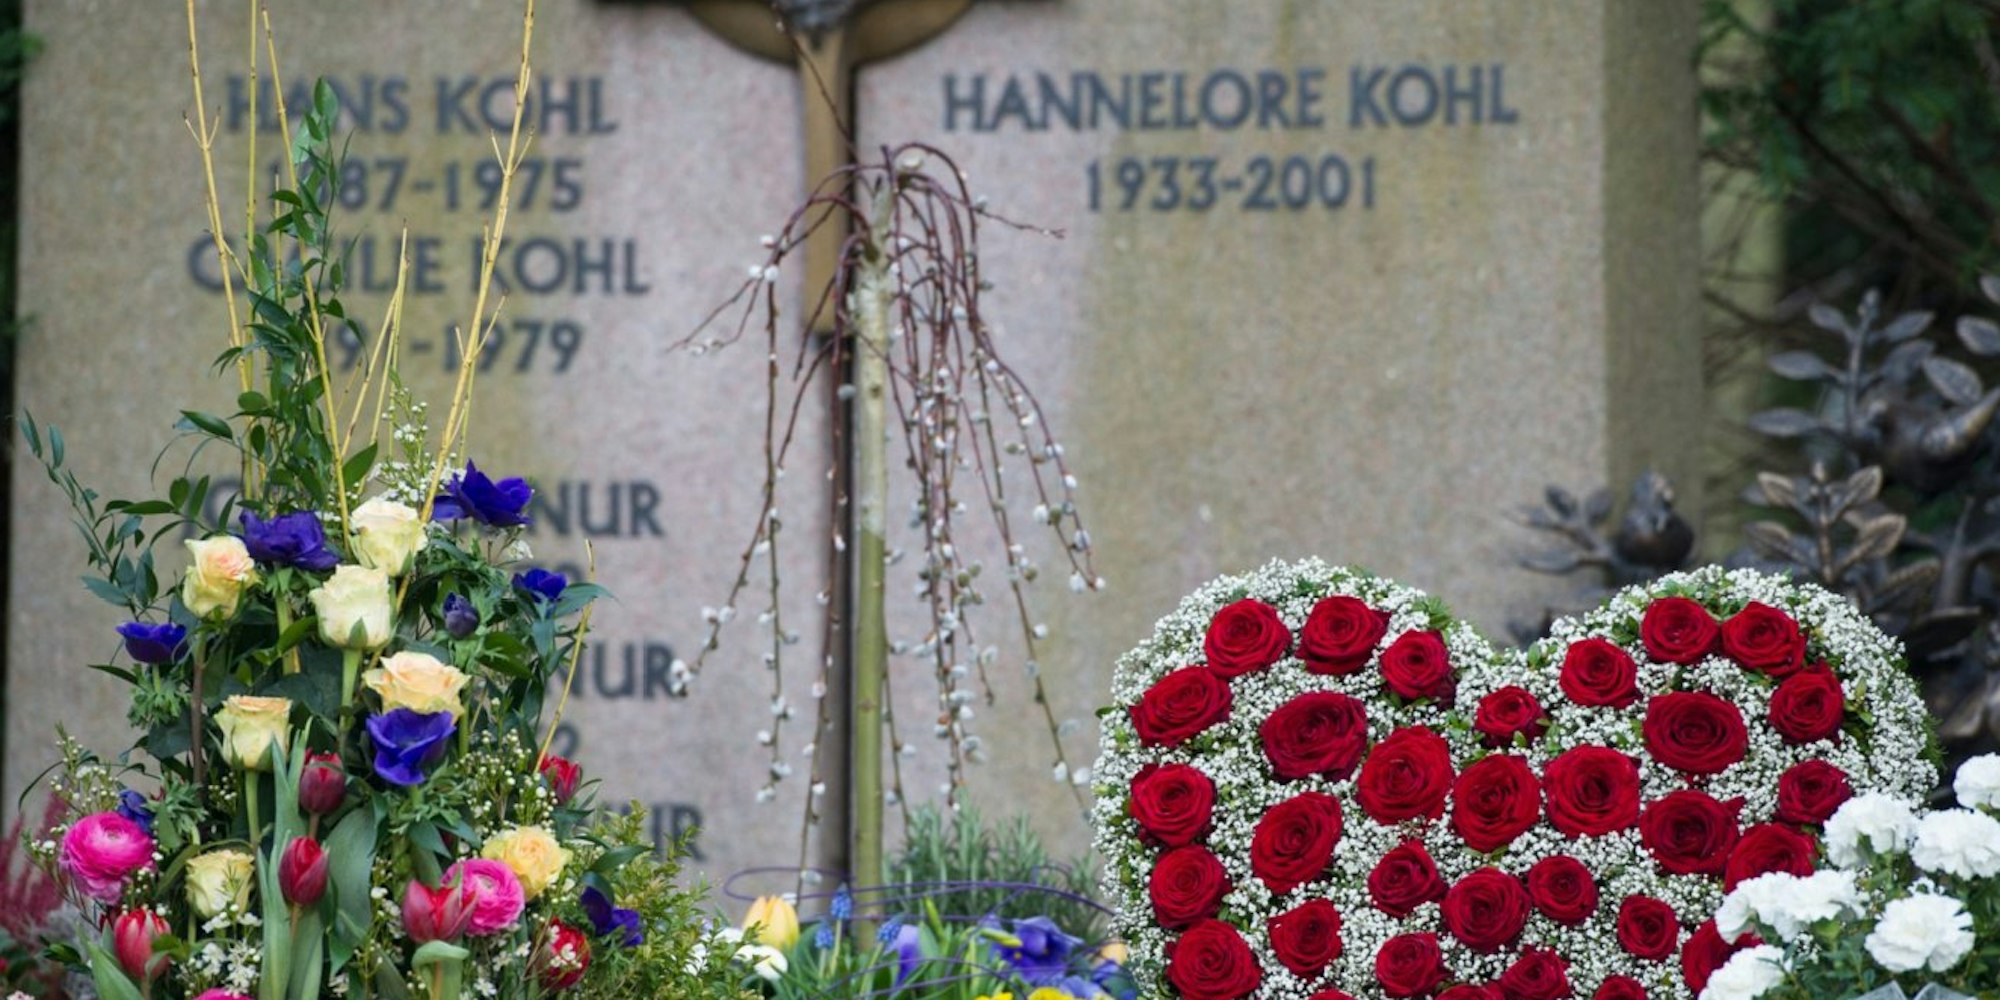 Das Grab von Hannelore Kohl in Ludwigshafen.